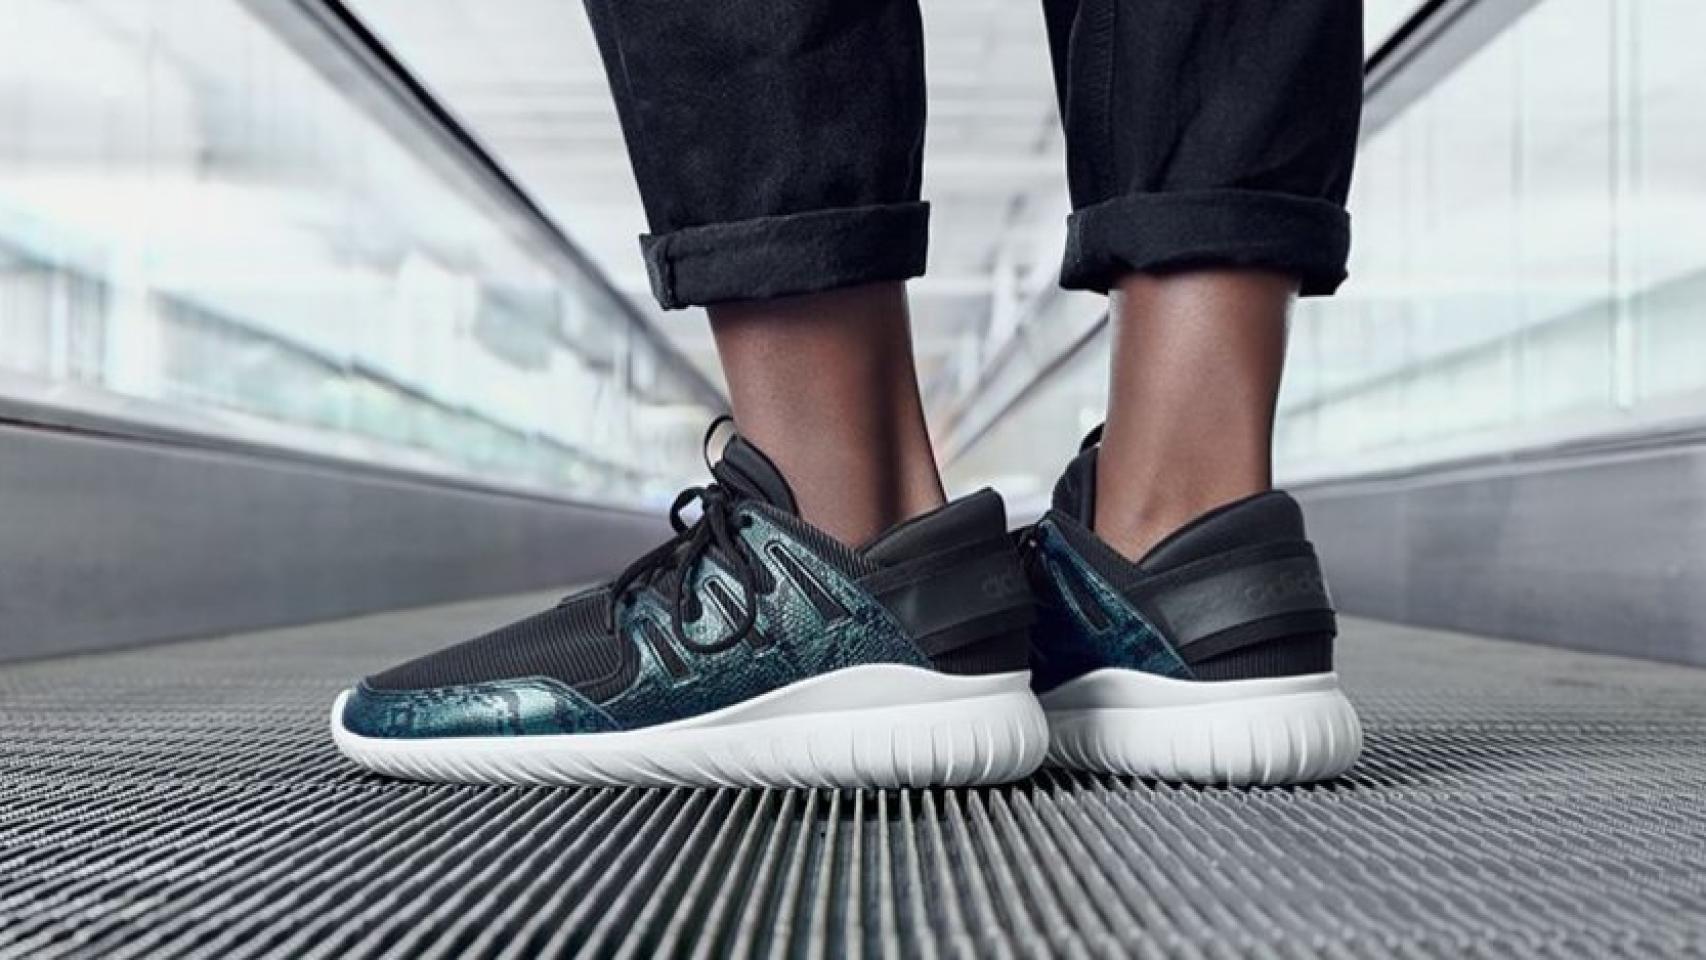 Potencial Fiel repollo Adidas saca nuevas versiones de su colección de zapatillas Tubular